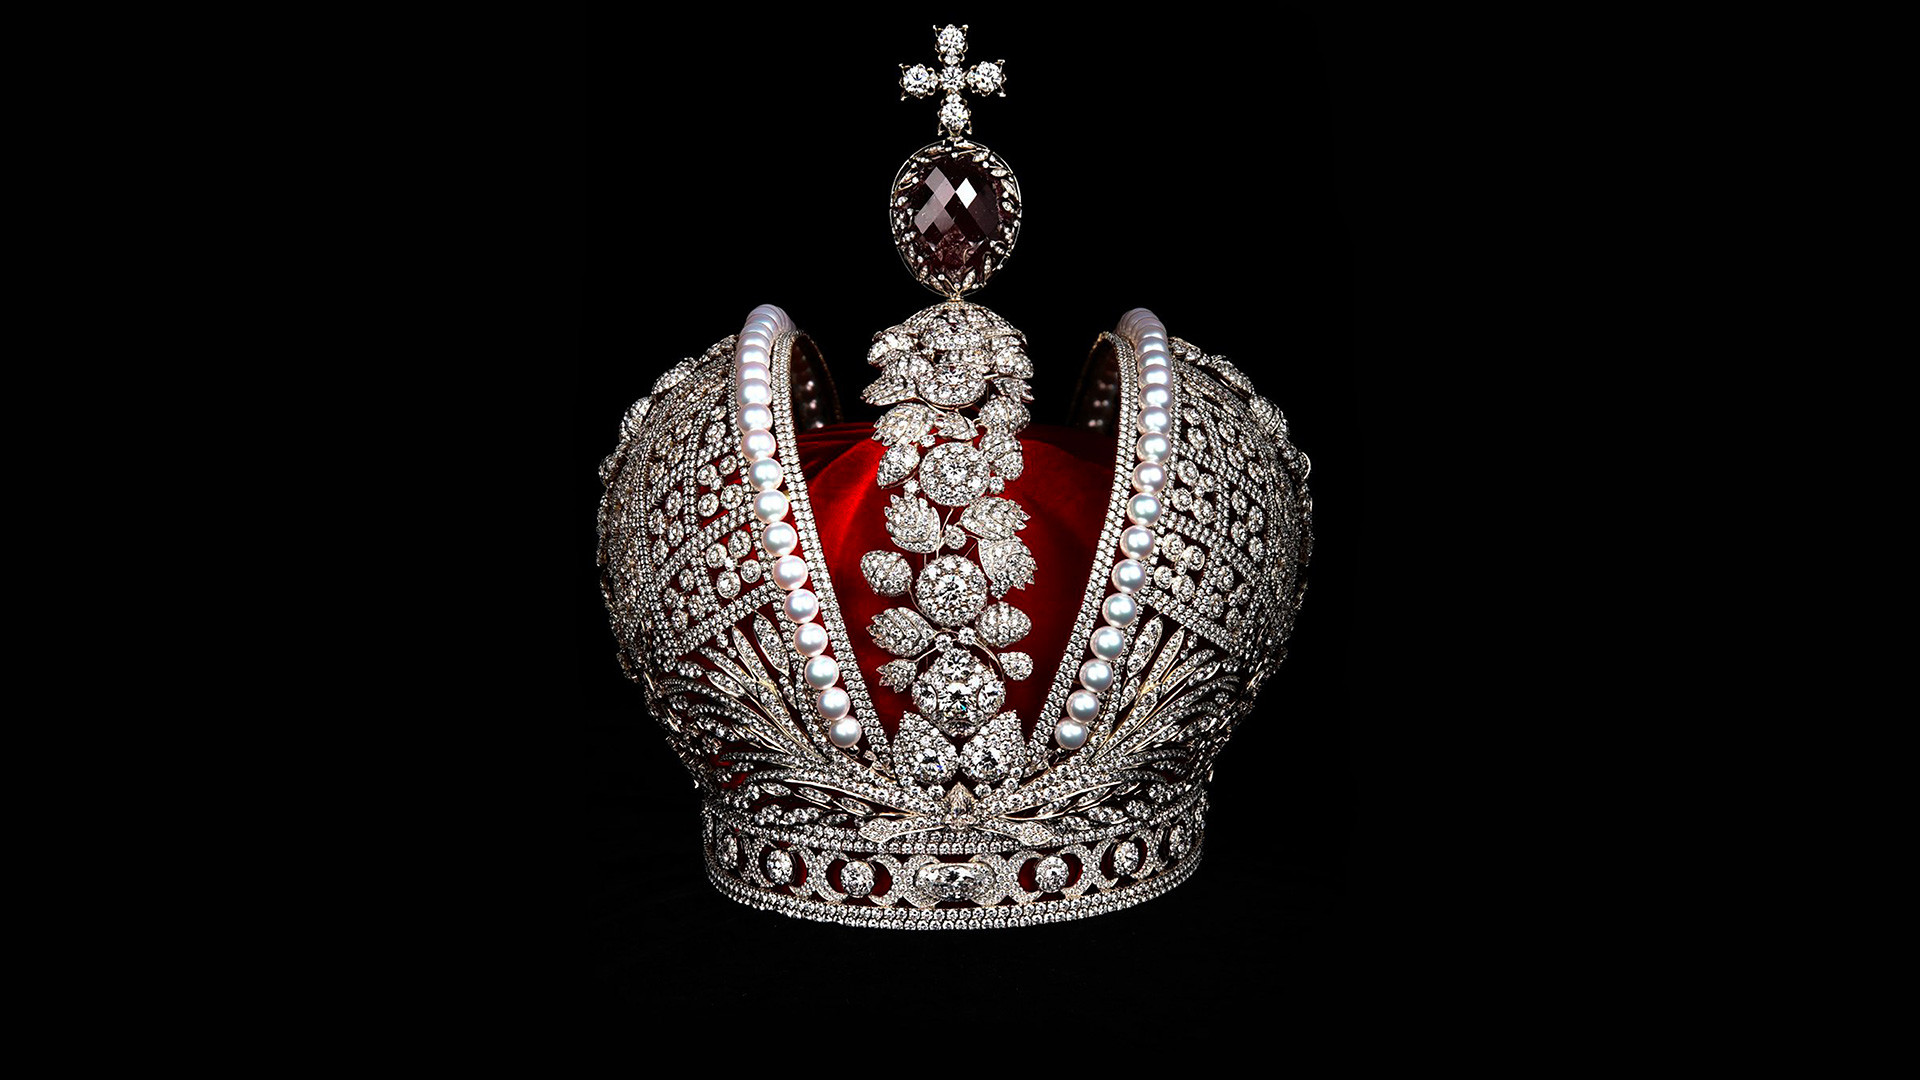 A grande coroa imperial da Rússia.
